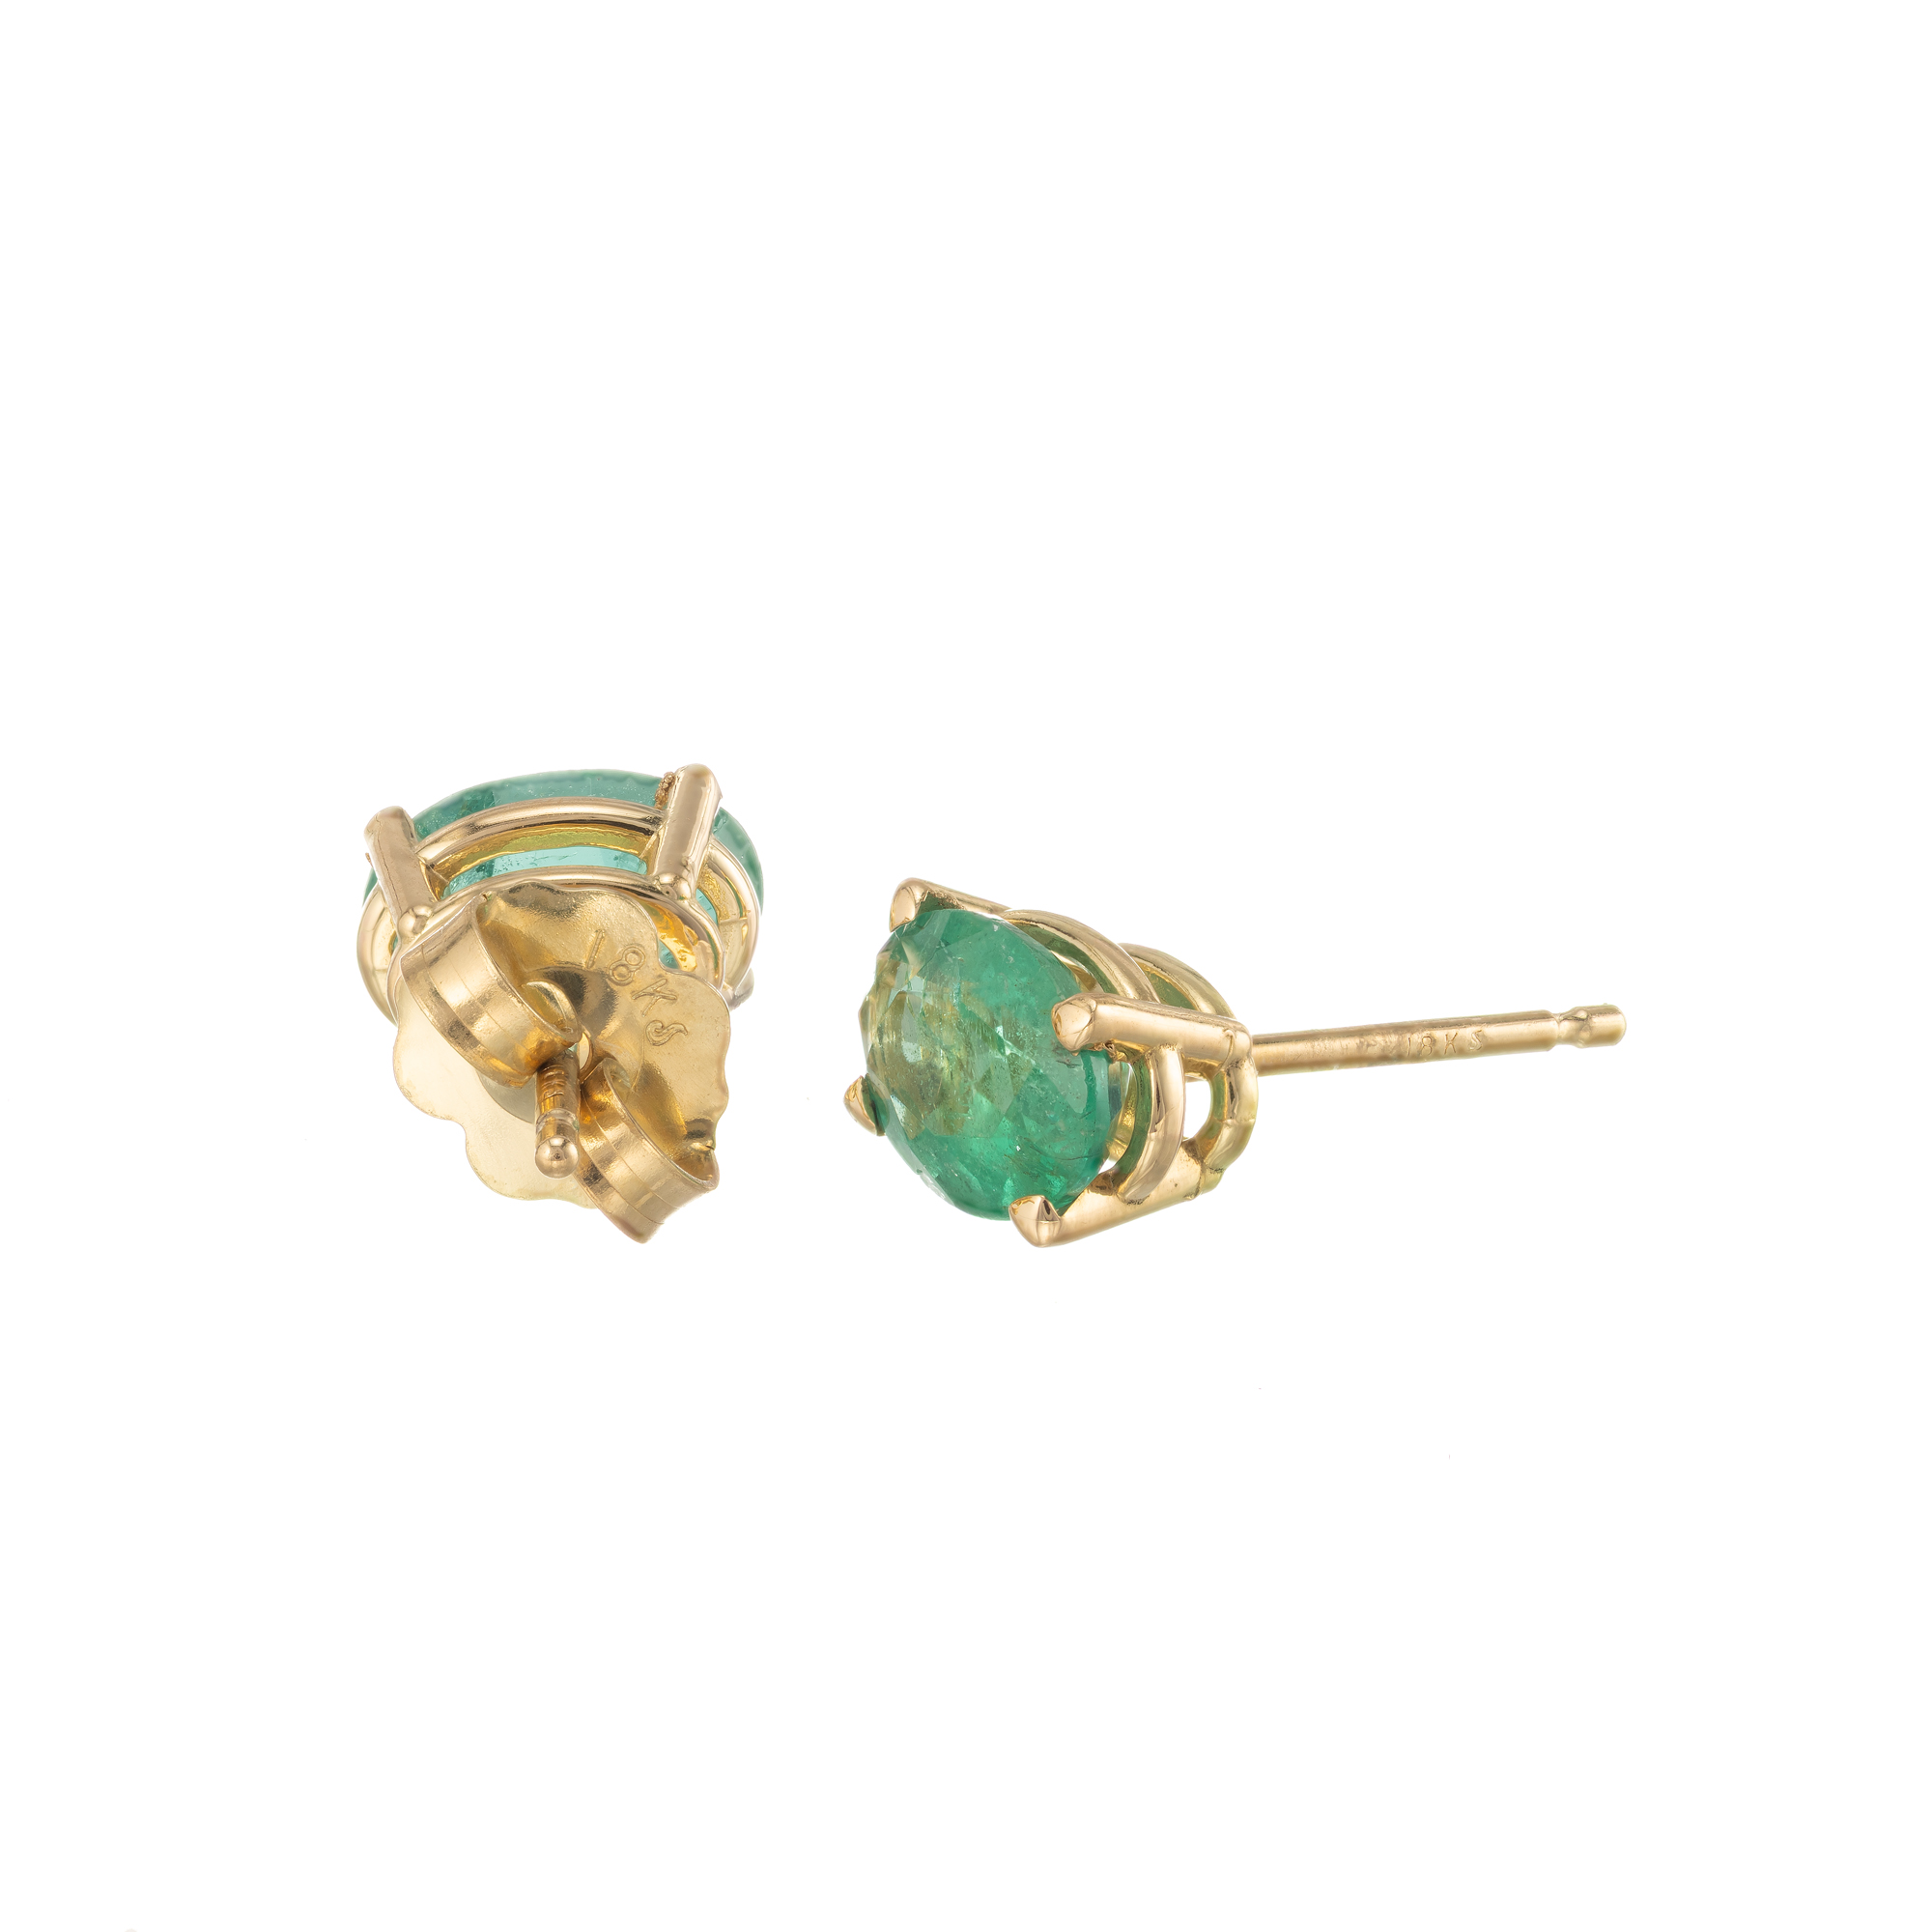 GIA Certified 1.23 Carat Oval Emerald 18k Yellow Gold Stud Earrings | eBay